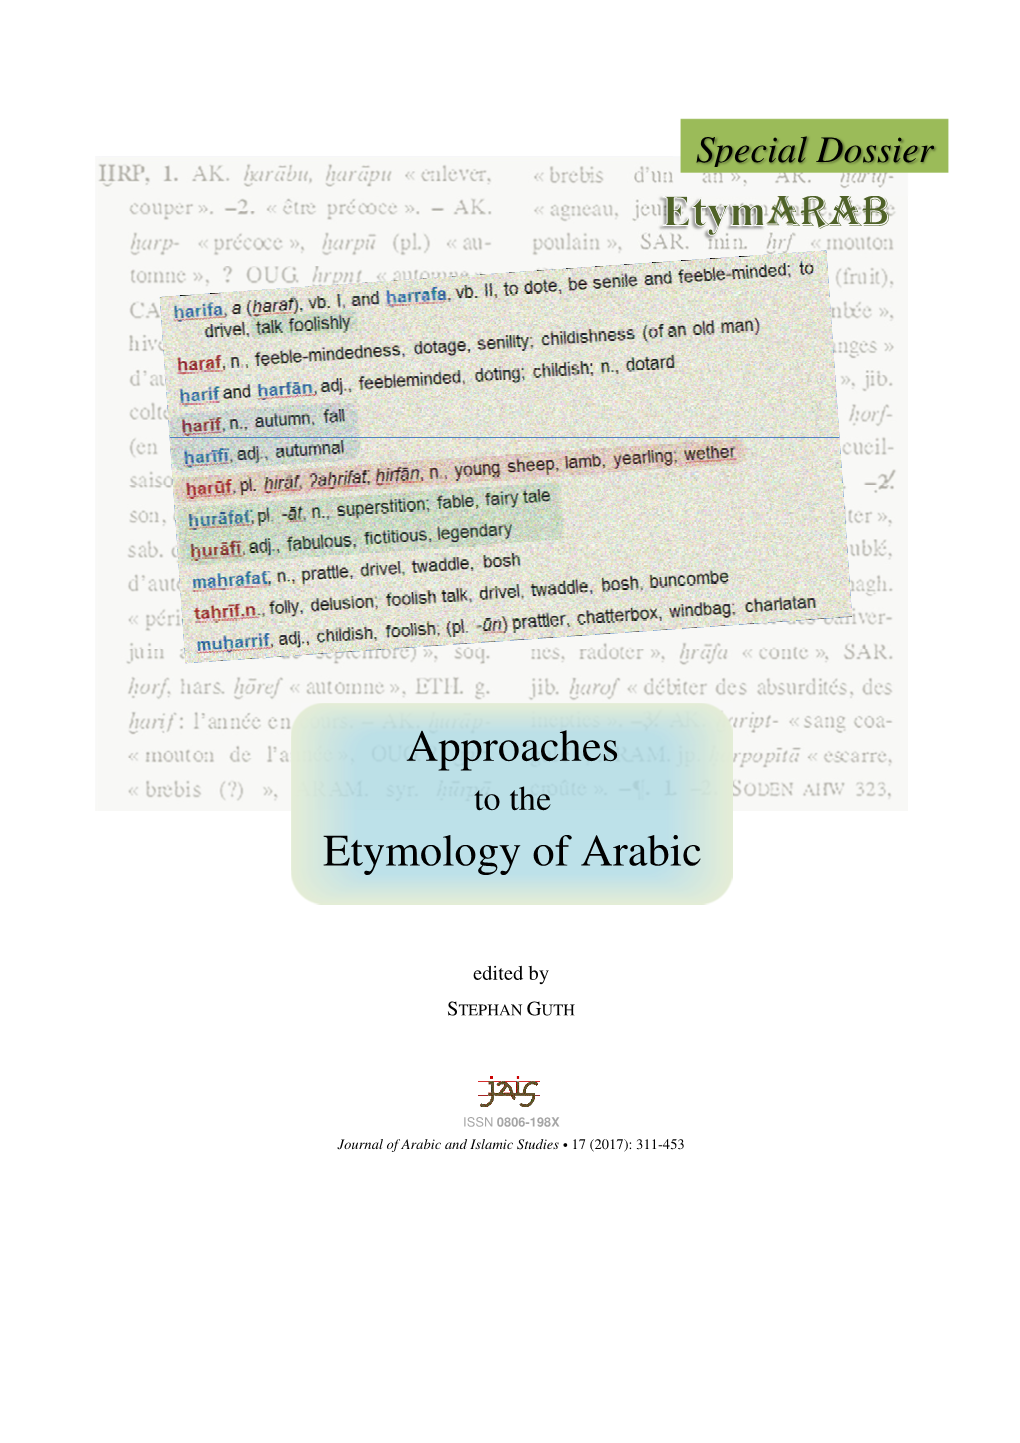 ARAB Approaches Etymology of Arabic